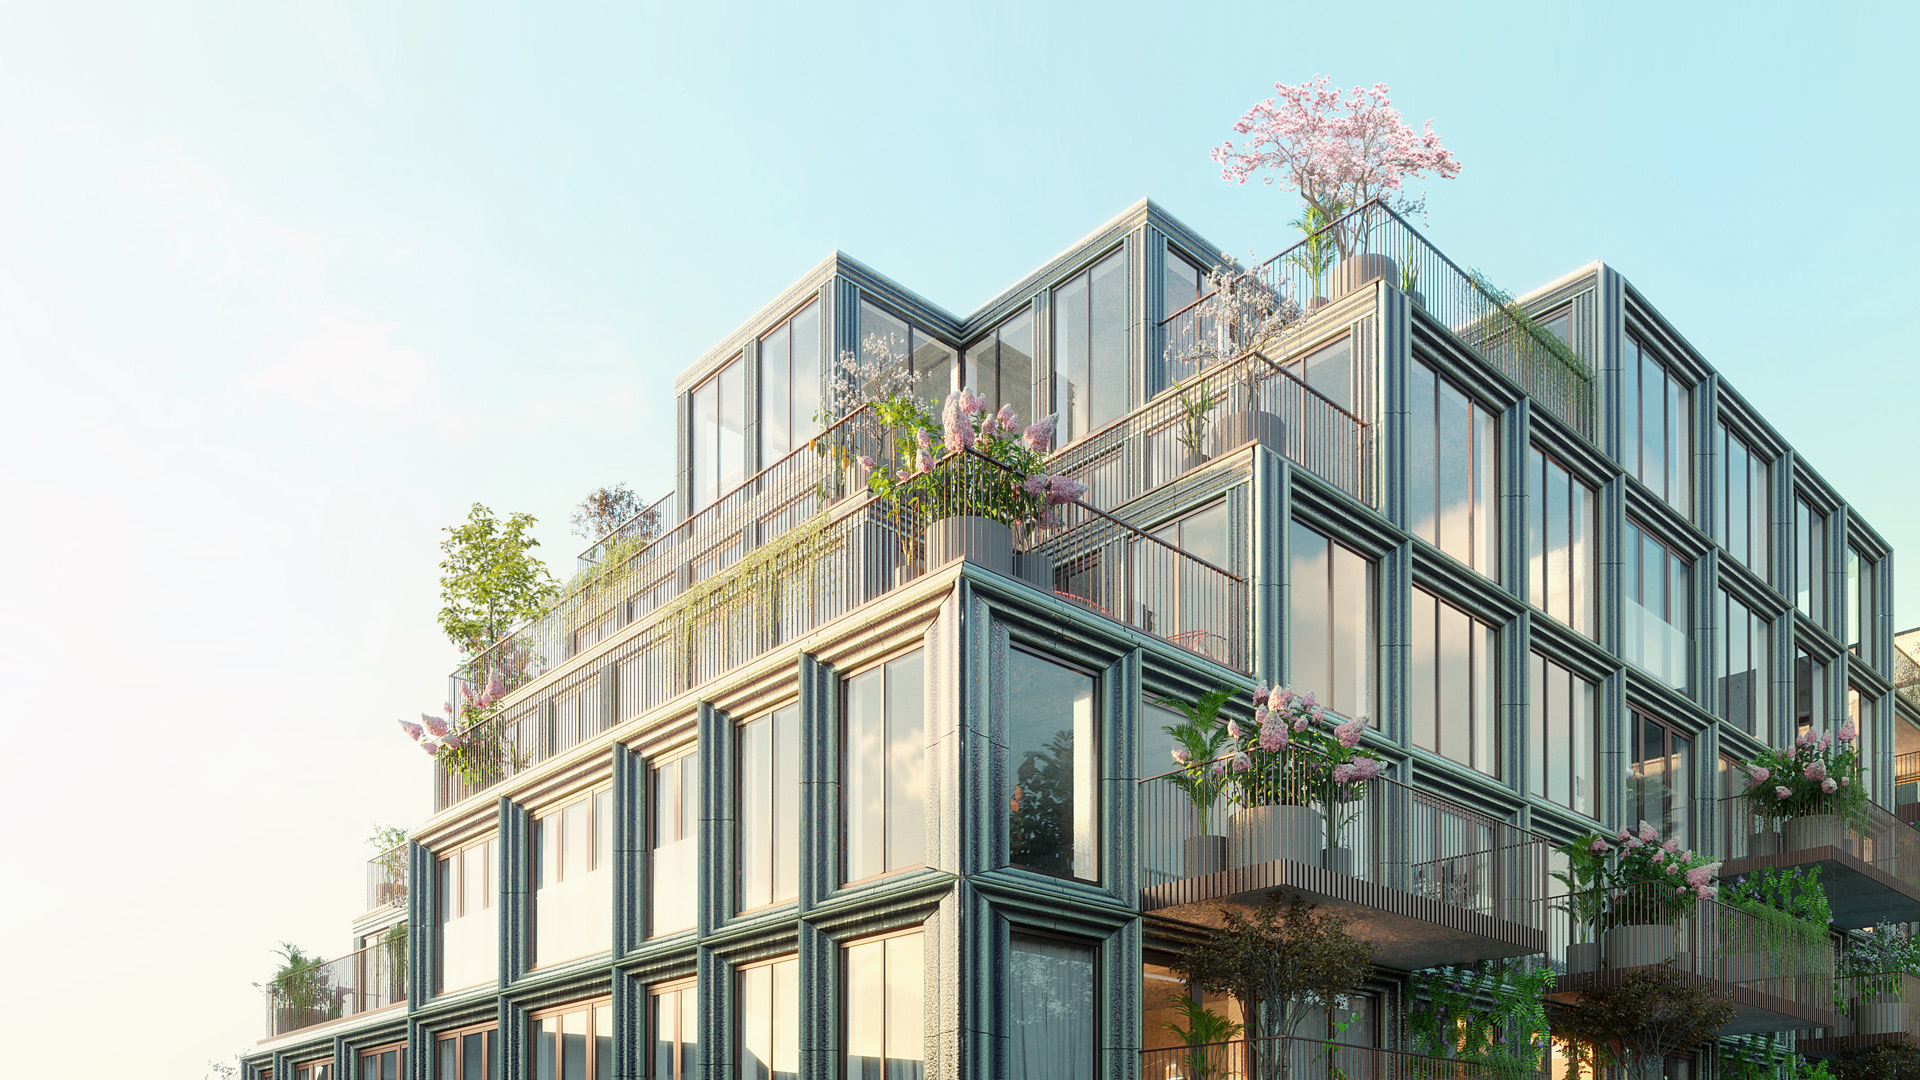 Mercado - appartementen met groene terrassen  Rode Weeshuisstraat Groningen 